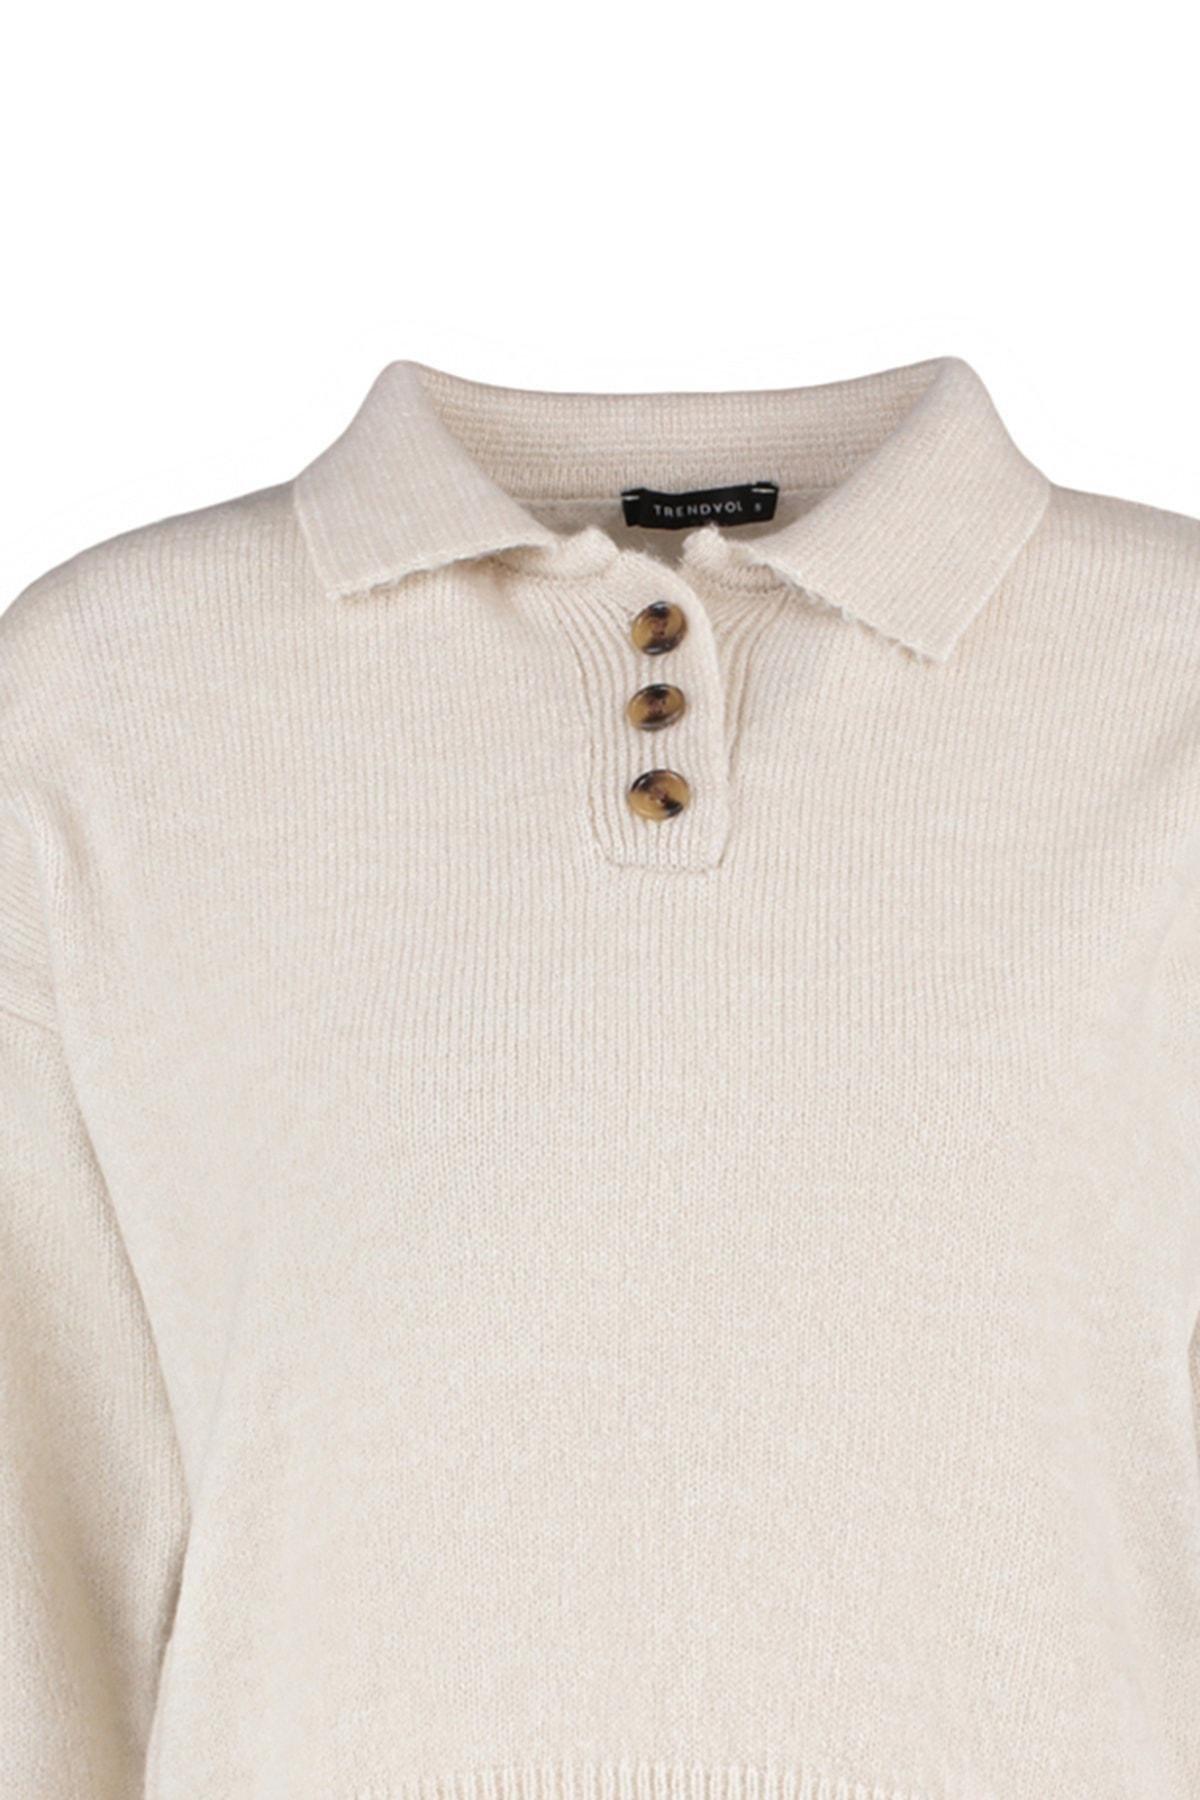 Trendyol - Beige Polo Neck Sweater